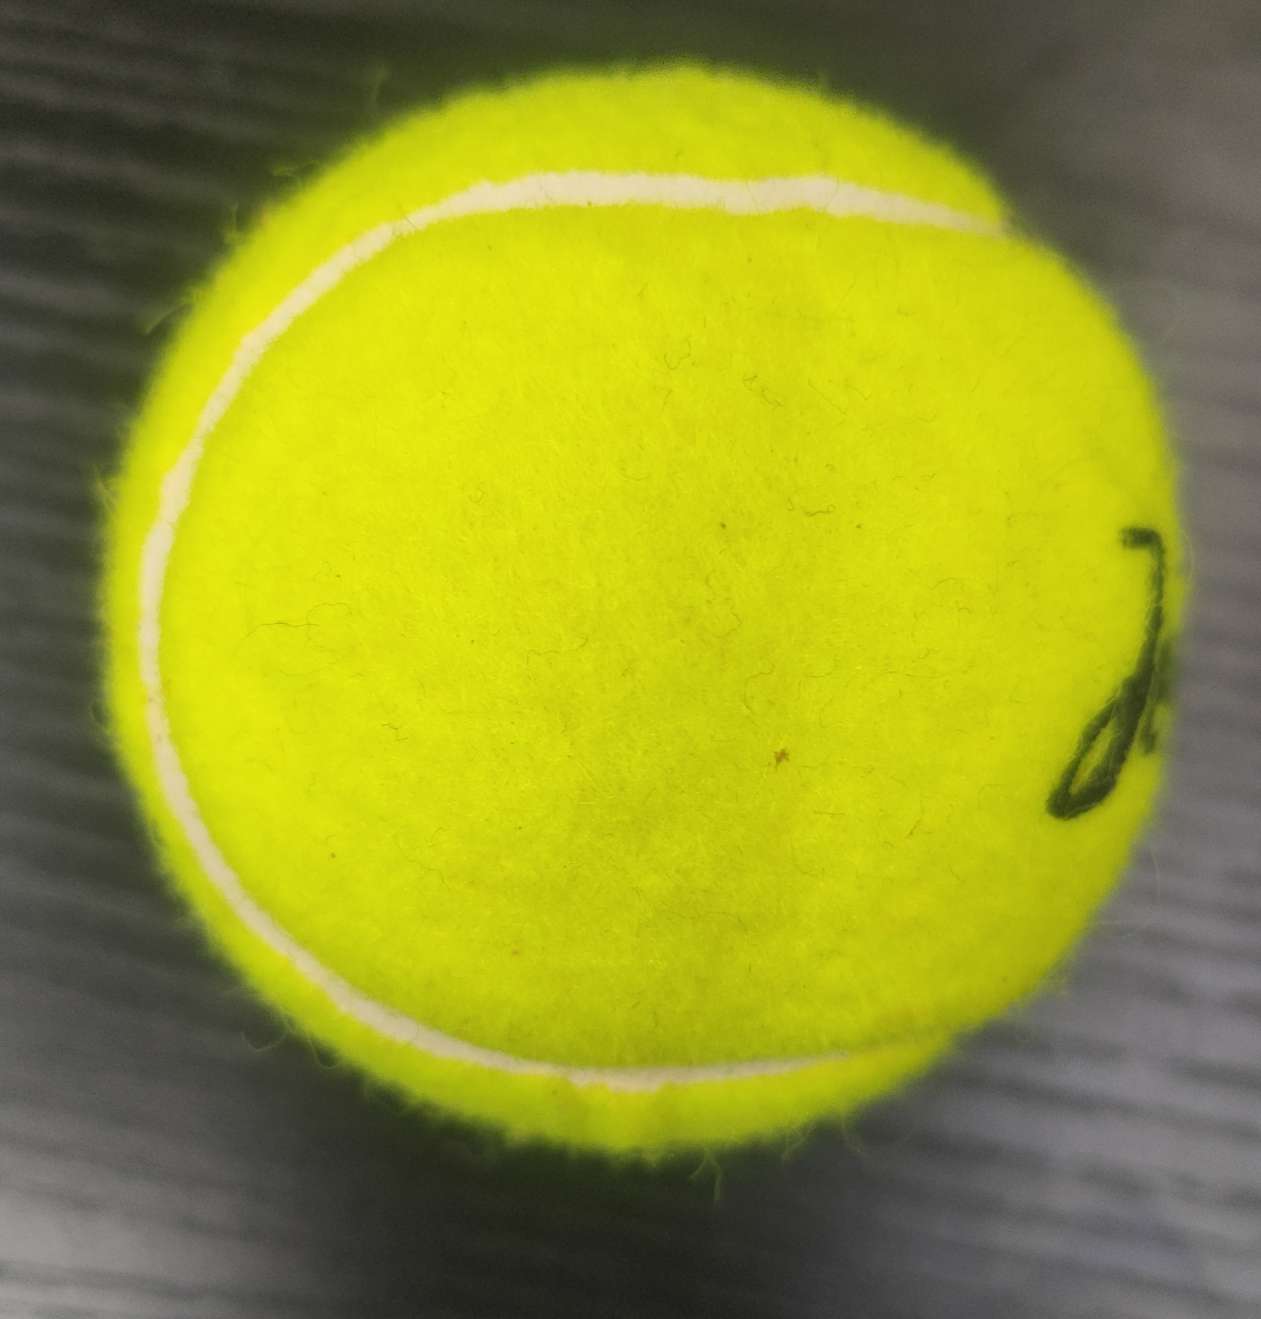 网球Tennis普通级网球训练网球库存网球现货网球网球Tennis普通级网球训练网球库存网球现货网球